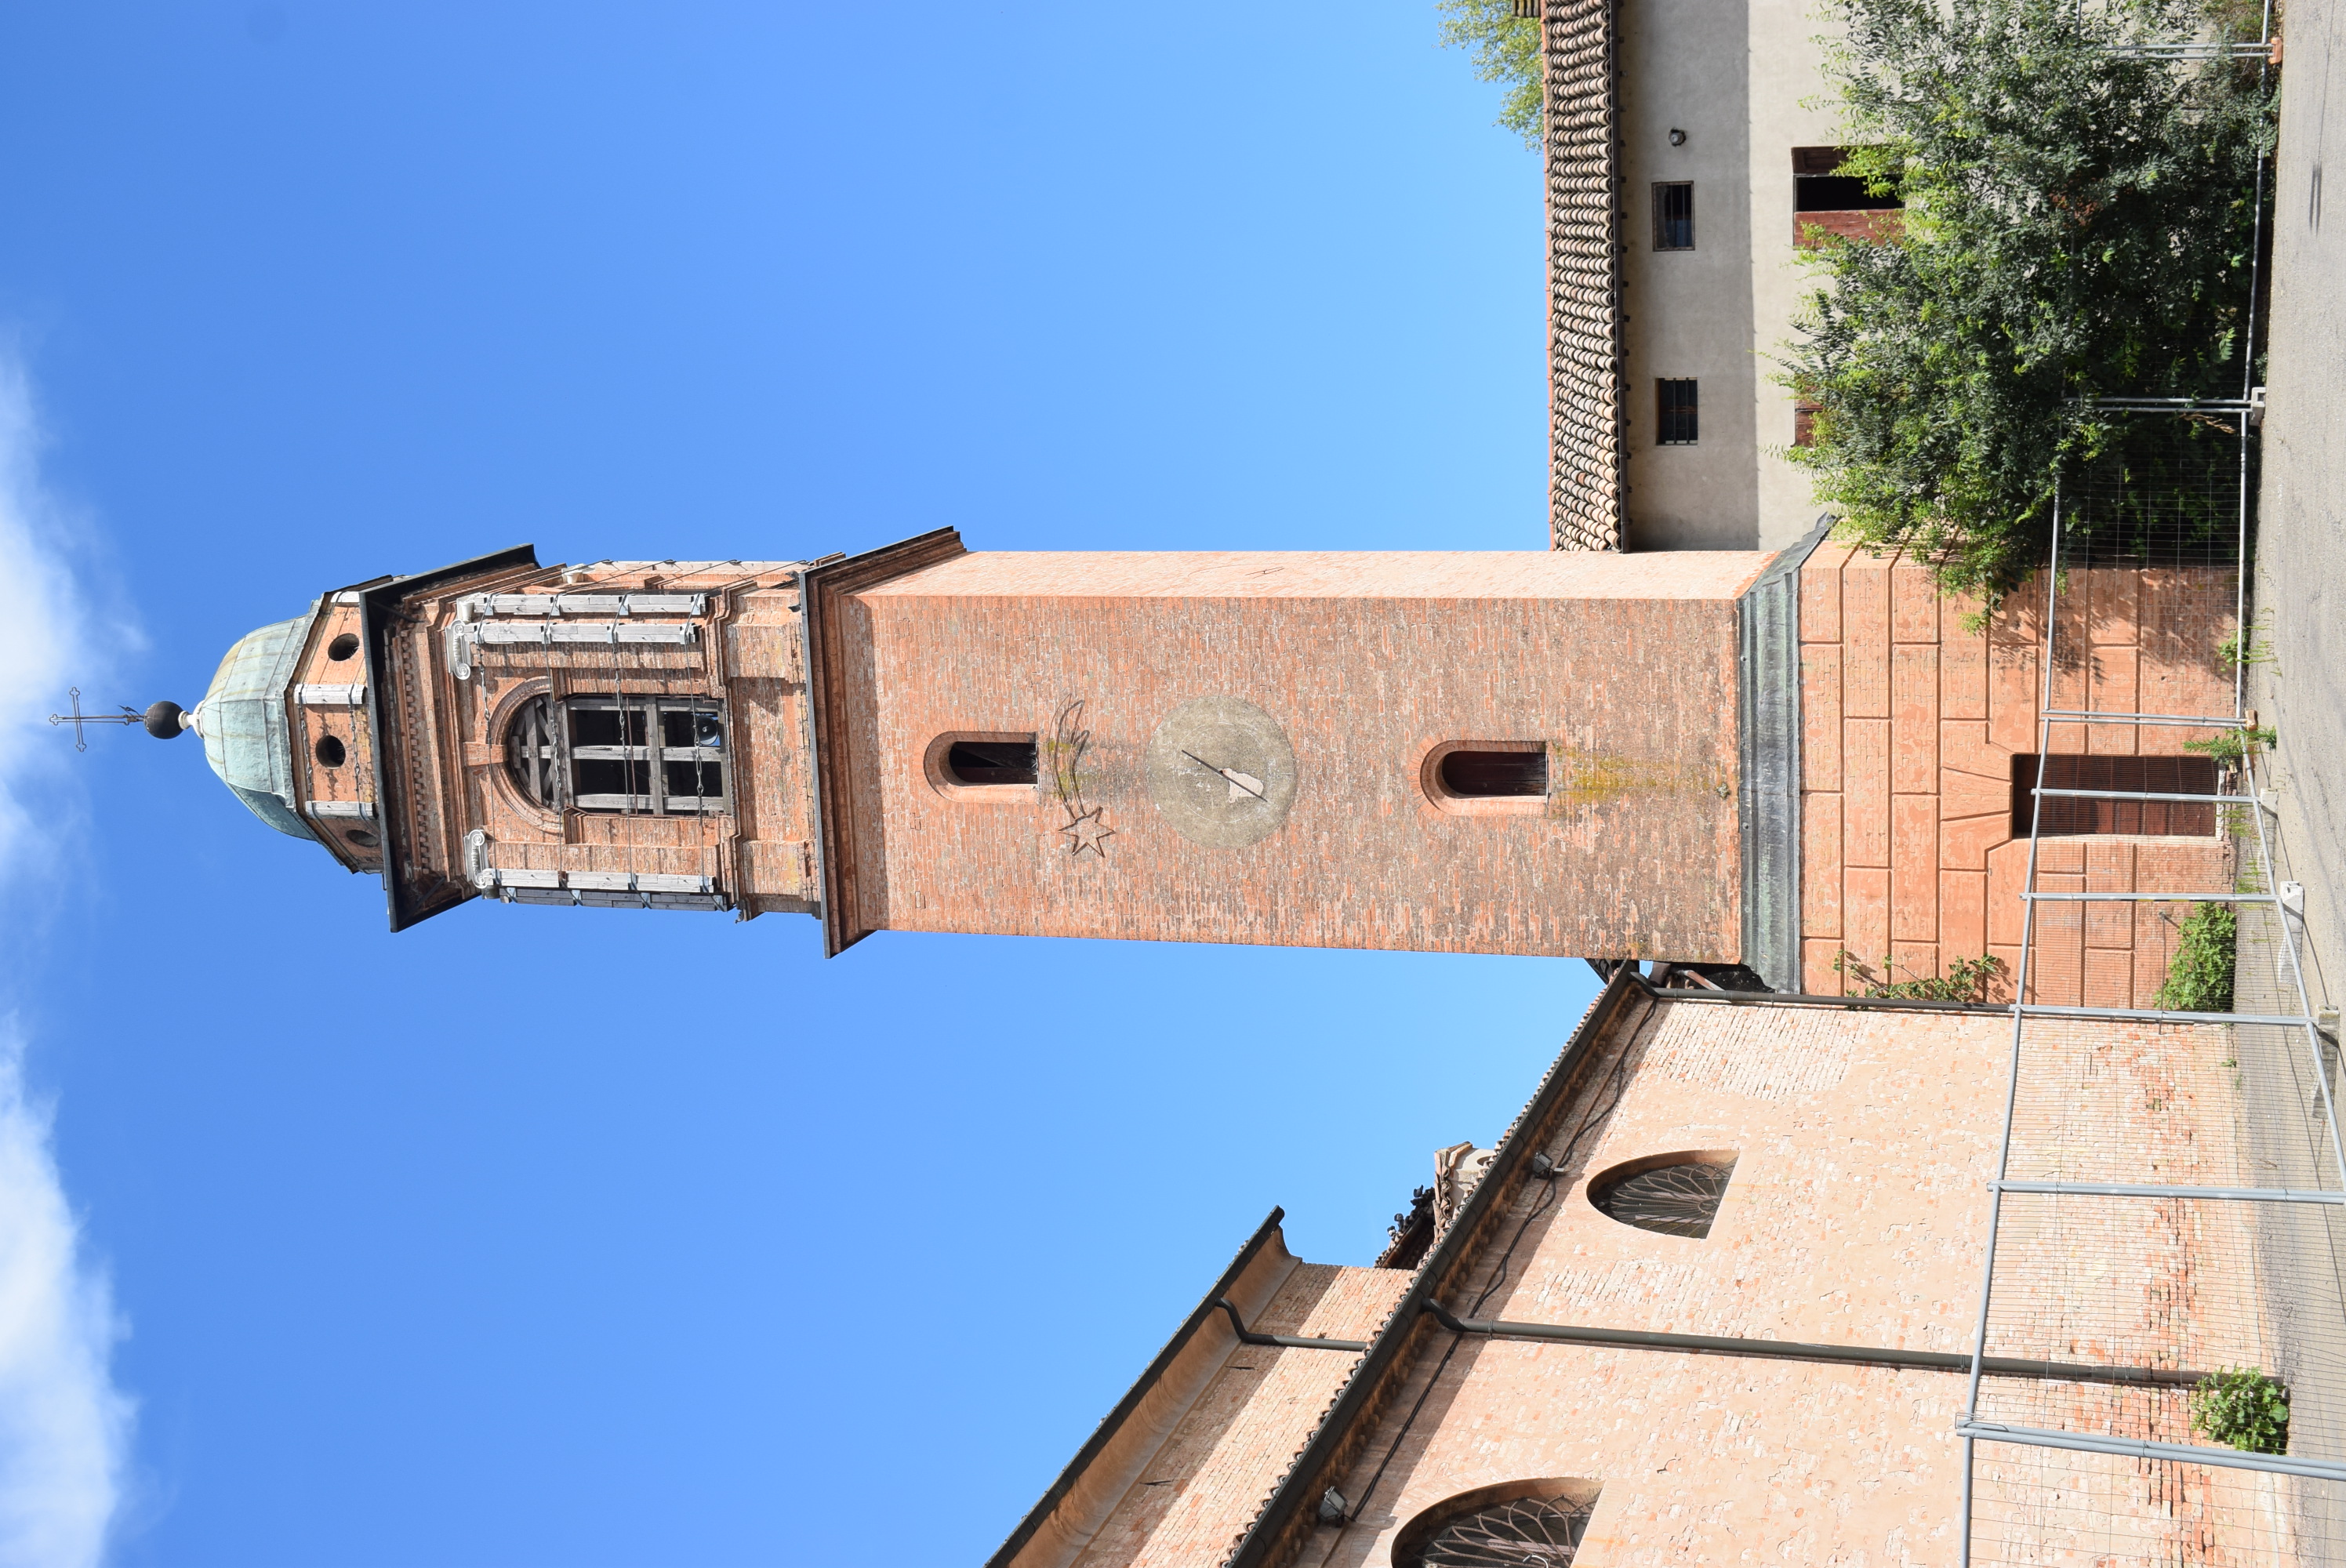 Campanile della Chiesa di S. Giulia Vergine e Martire (campanile) - Carpi (MO) 